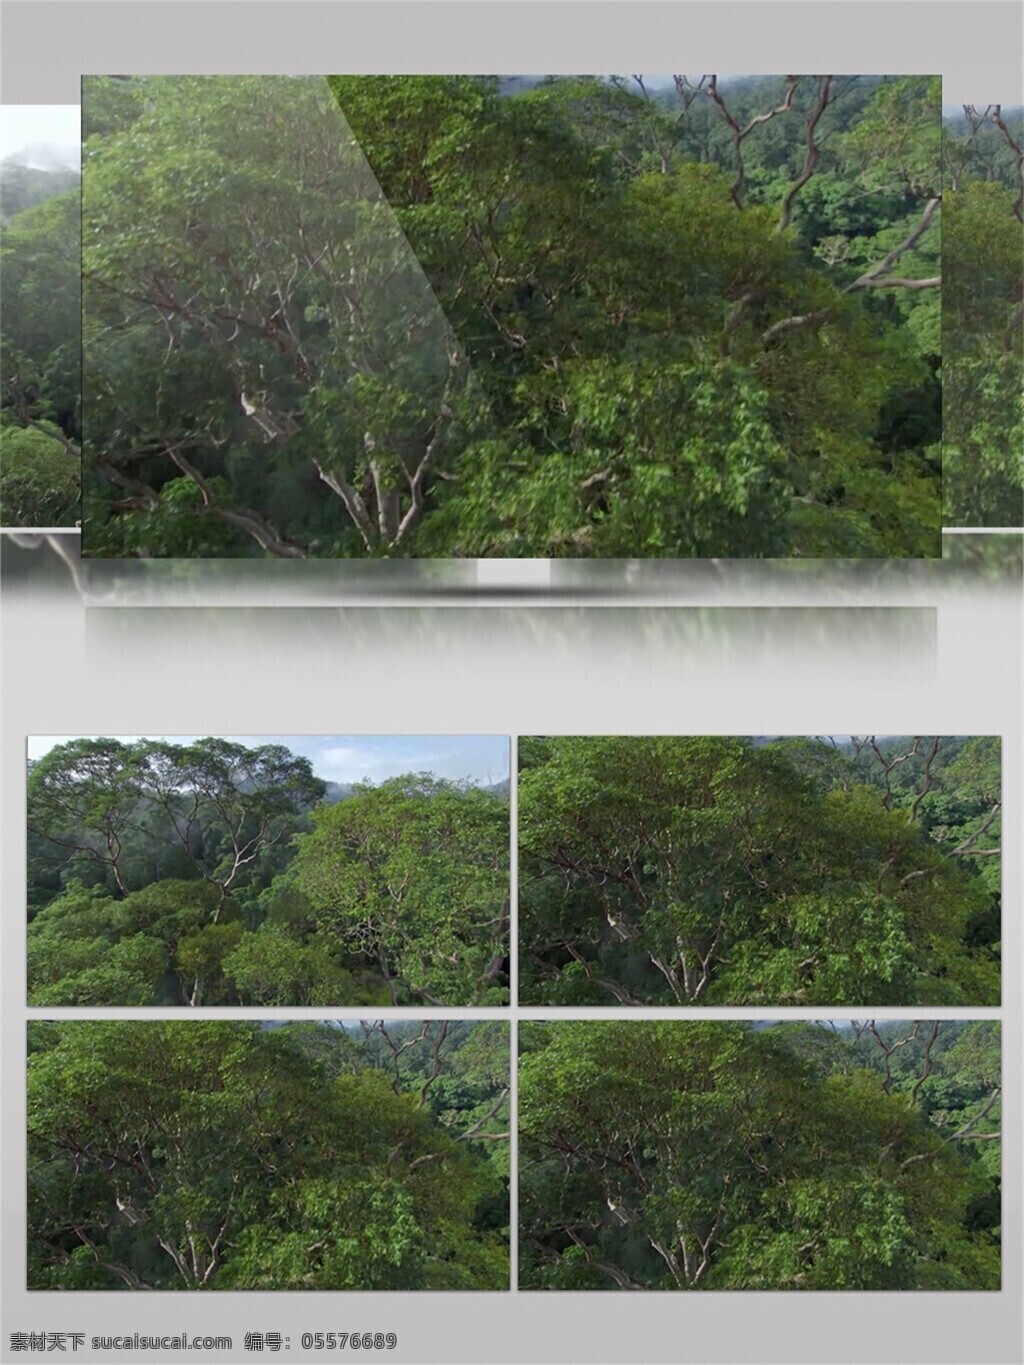 琼林 玉树 视频 音效 绿色 植物 丛林 风光 视频素材 景区 视频音效